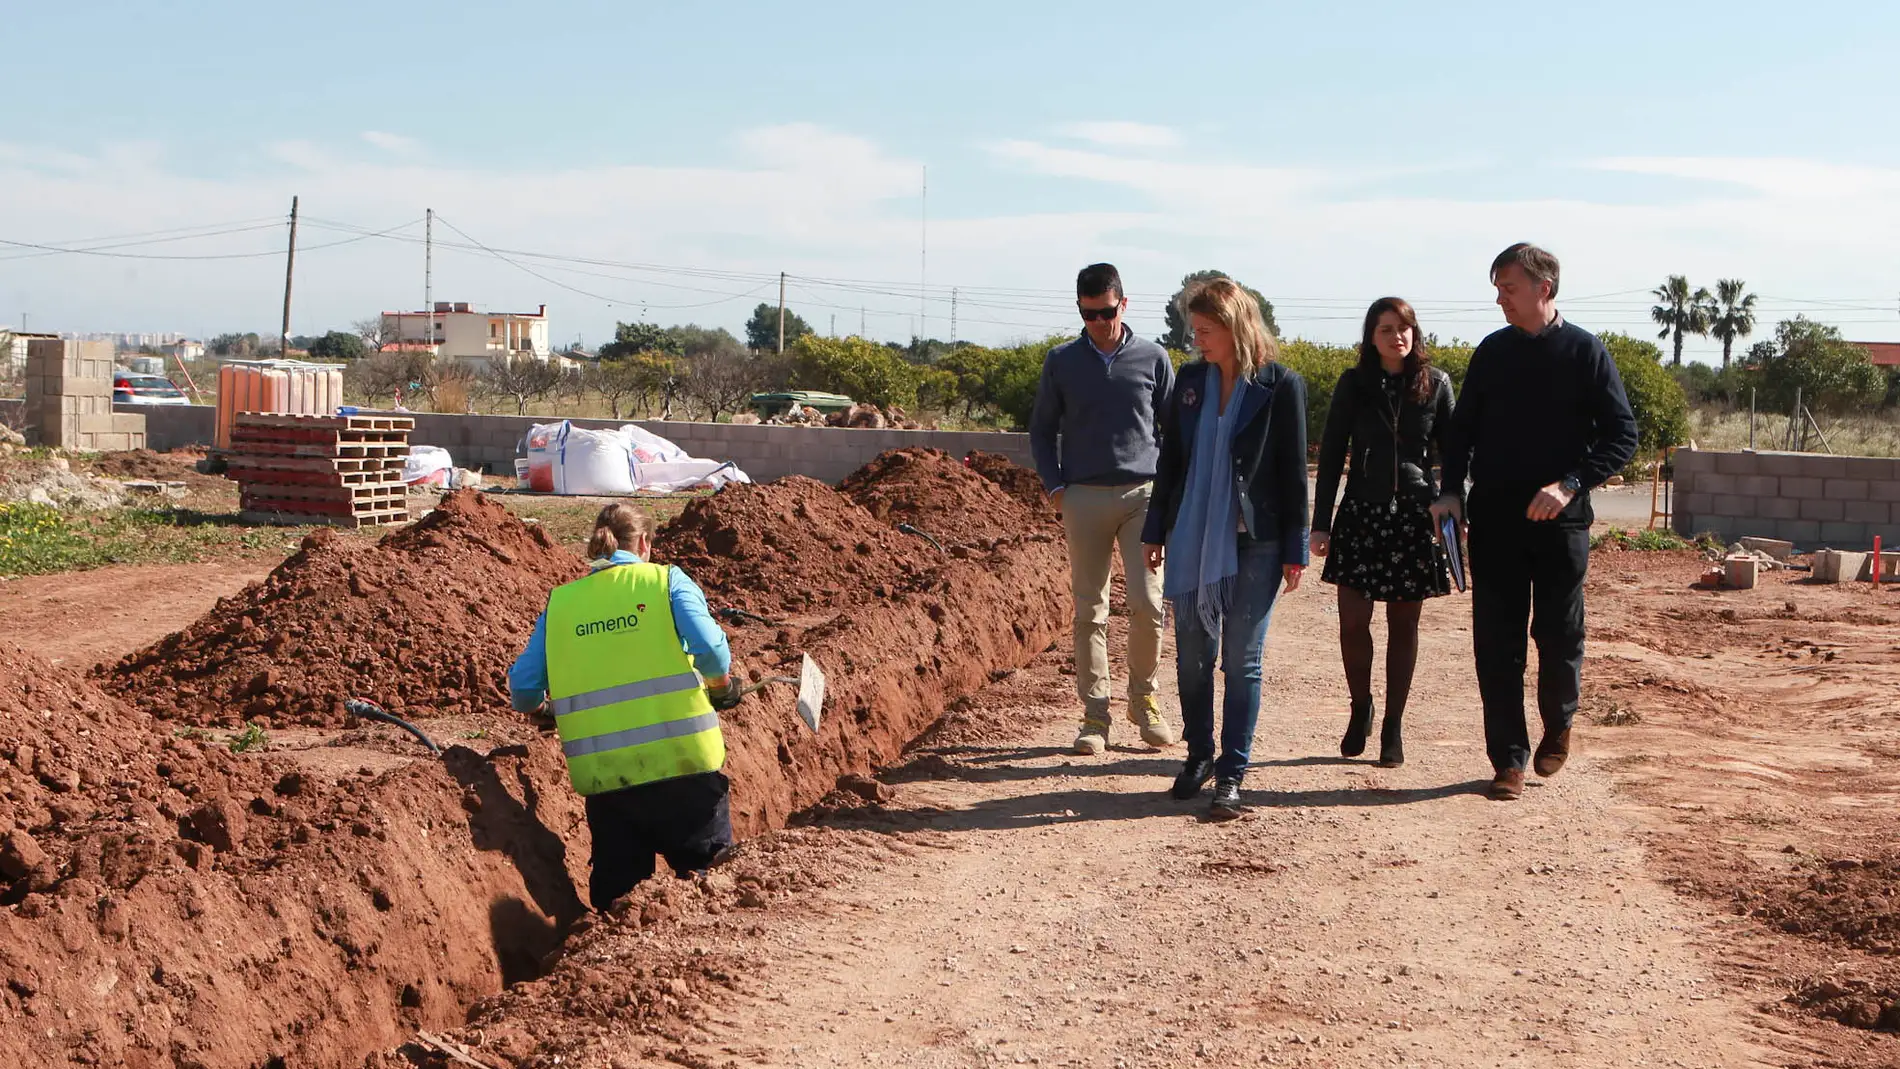 La alcaldesa de Castellón, Amparo Marco, ha visitado las obras junto al concejal de Ordenación del Territorio, Rafa Simó, y la concejala de Sostenibilidad Ambiental, Sara Usó.